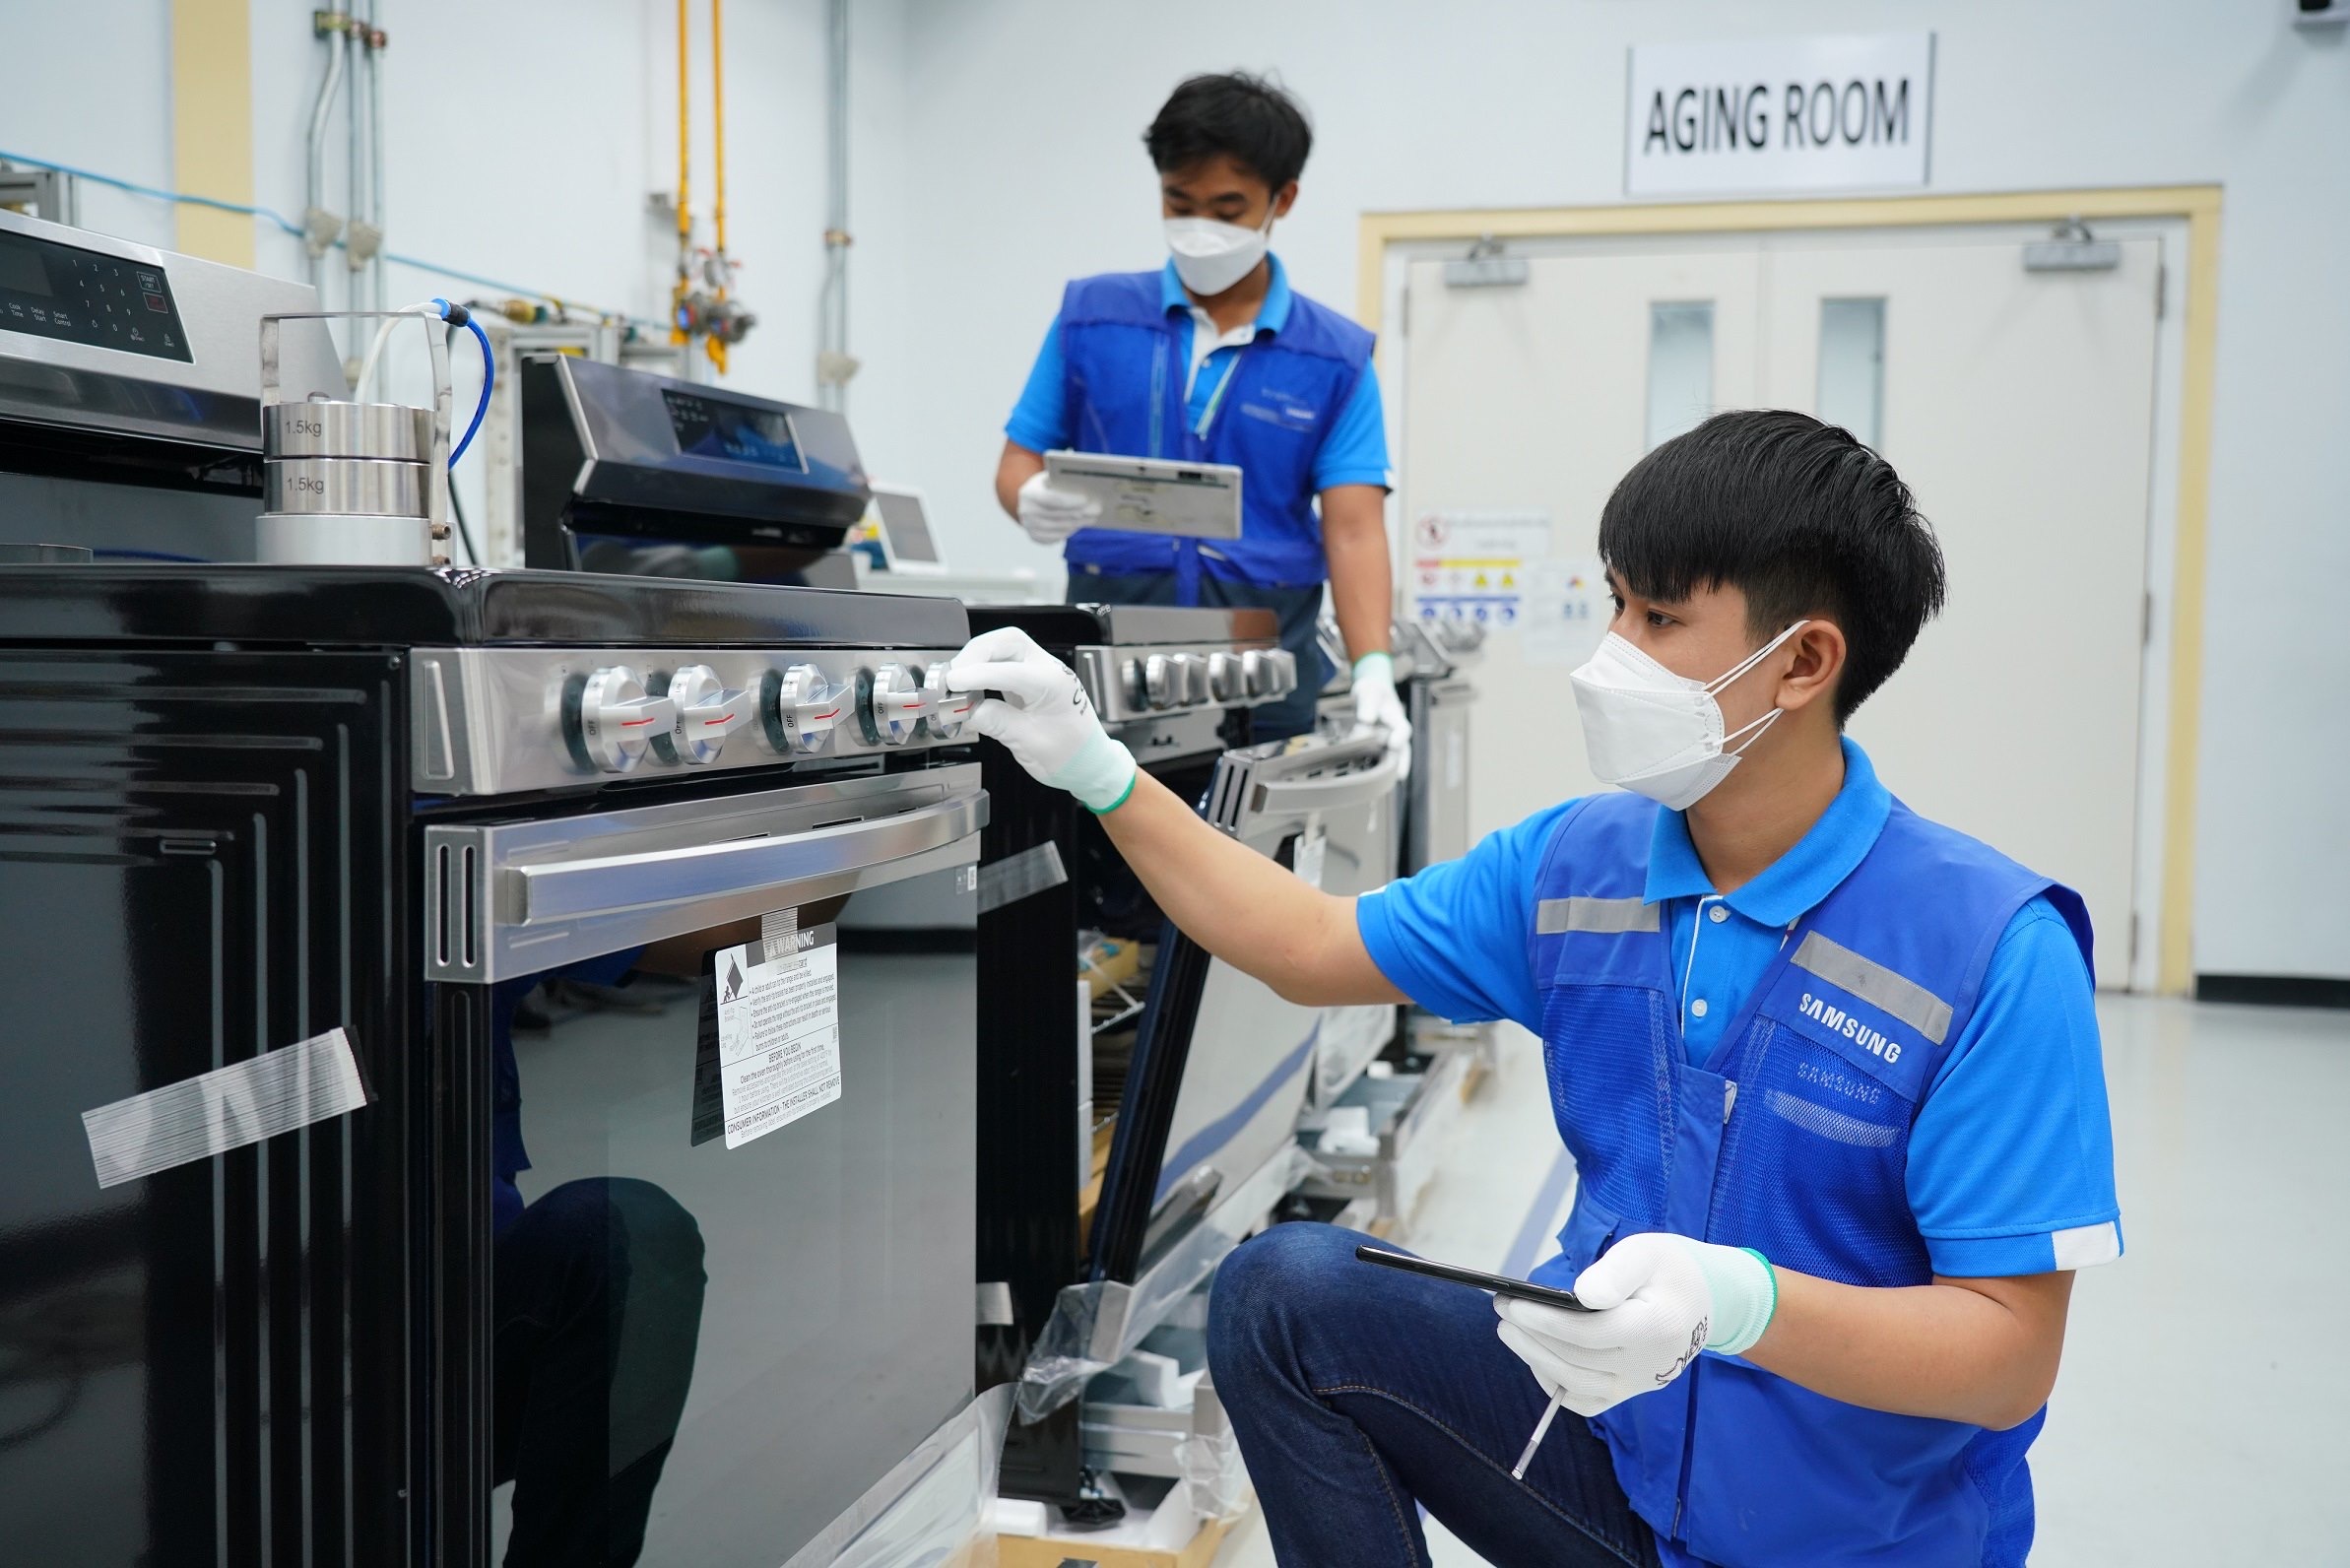 32 ปี “ไทยซัมซุง” เดินหน้าขับเคลื่อนธุรกิจในไทยด้วยความใส่ใจ สู่ฐานการผลิตเครื่องใช้ไฟฟ้าซัมซุงที่ใหญ่สุดในโลก